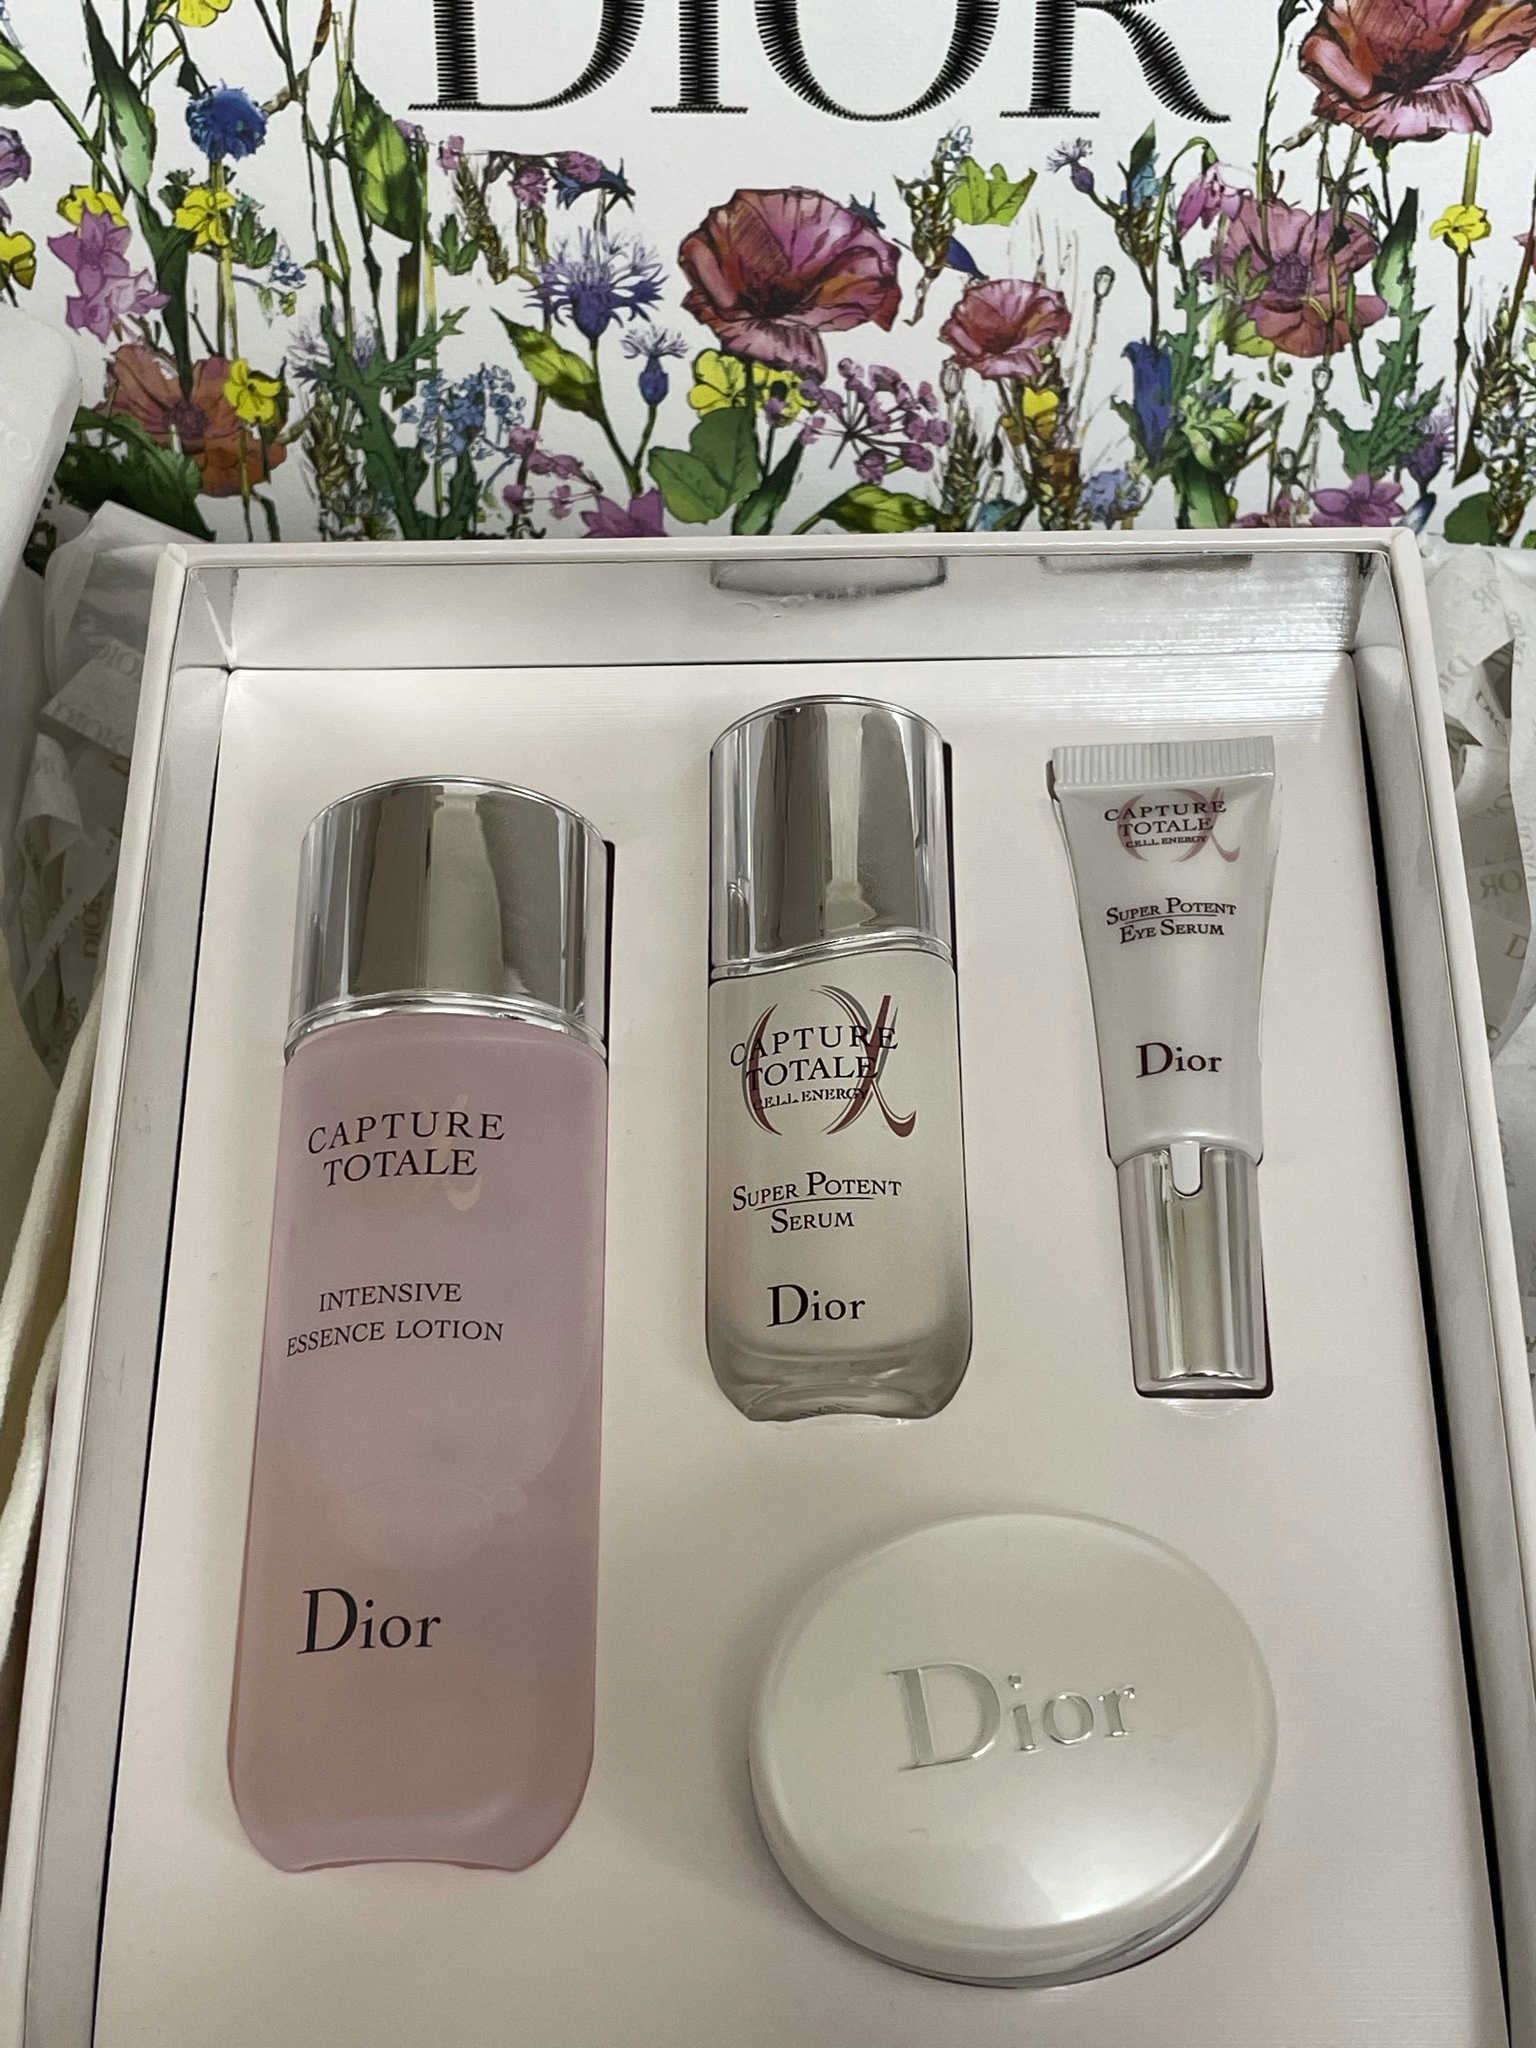 アウトレットセール 特集 Dior ディスカバリーキット i9tmg.com.br